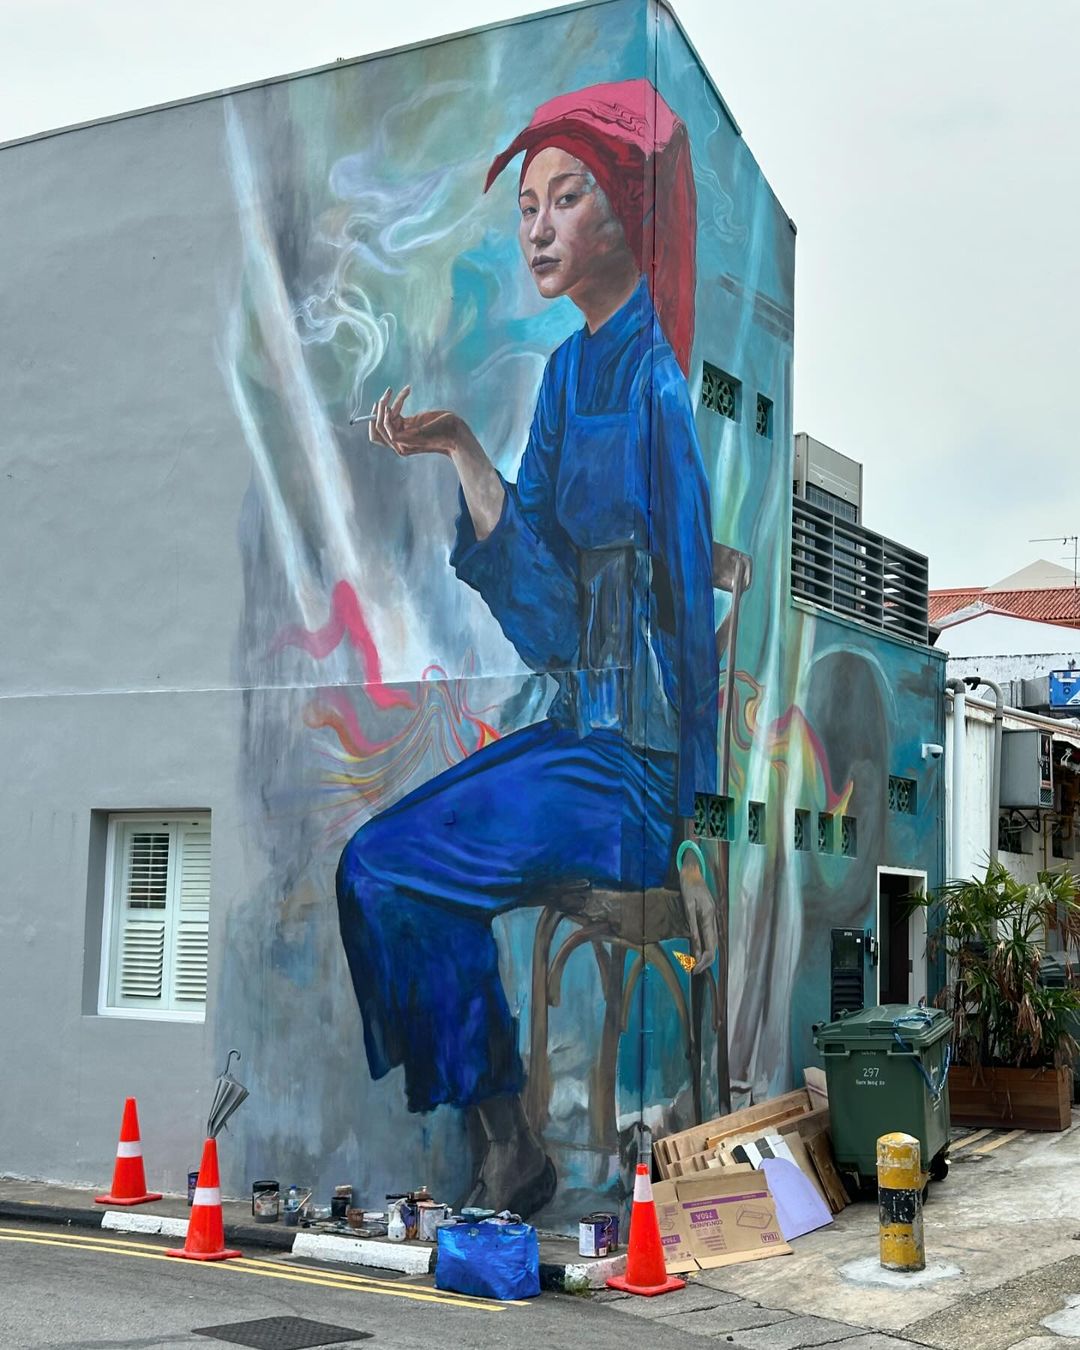 chinatown samsui woman mural artist